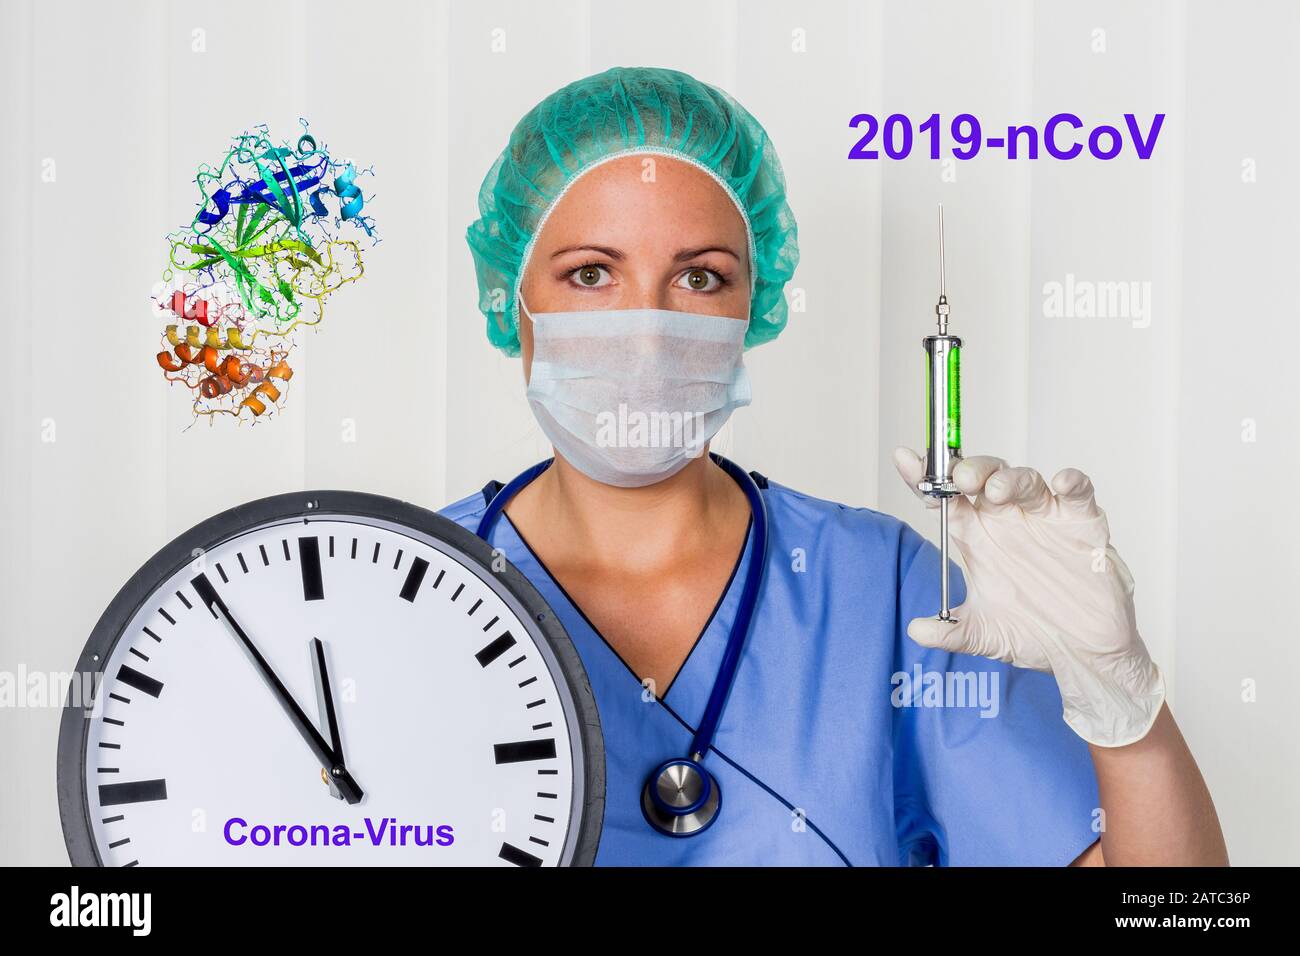 Ärztin mit Spritze und Corona-Virus, Wecker, 5 vor 12, Lebensgefahr, 2019-nCoV, Stock Photo